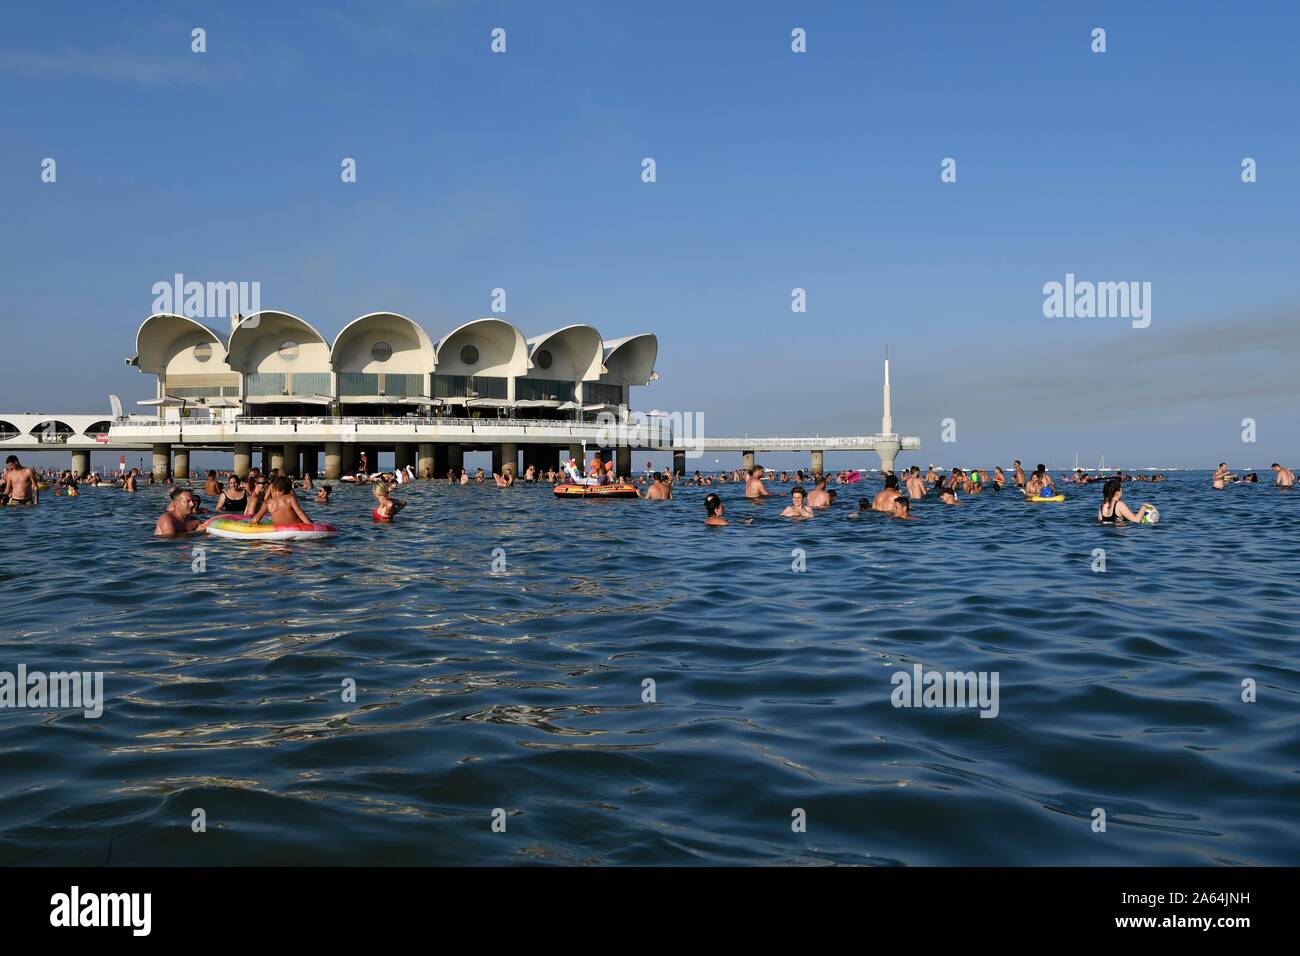 Tourists bathing in the sea, Terrazza a Mare, Lignano Sabbiadoro, Adriatic Sea, Friuli Venezia Giulia, Italy Stock Photo